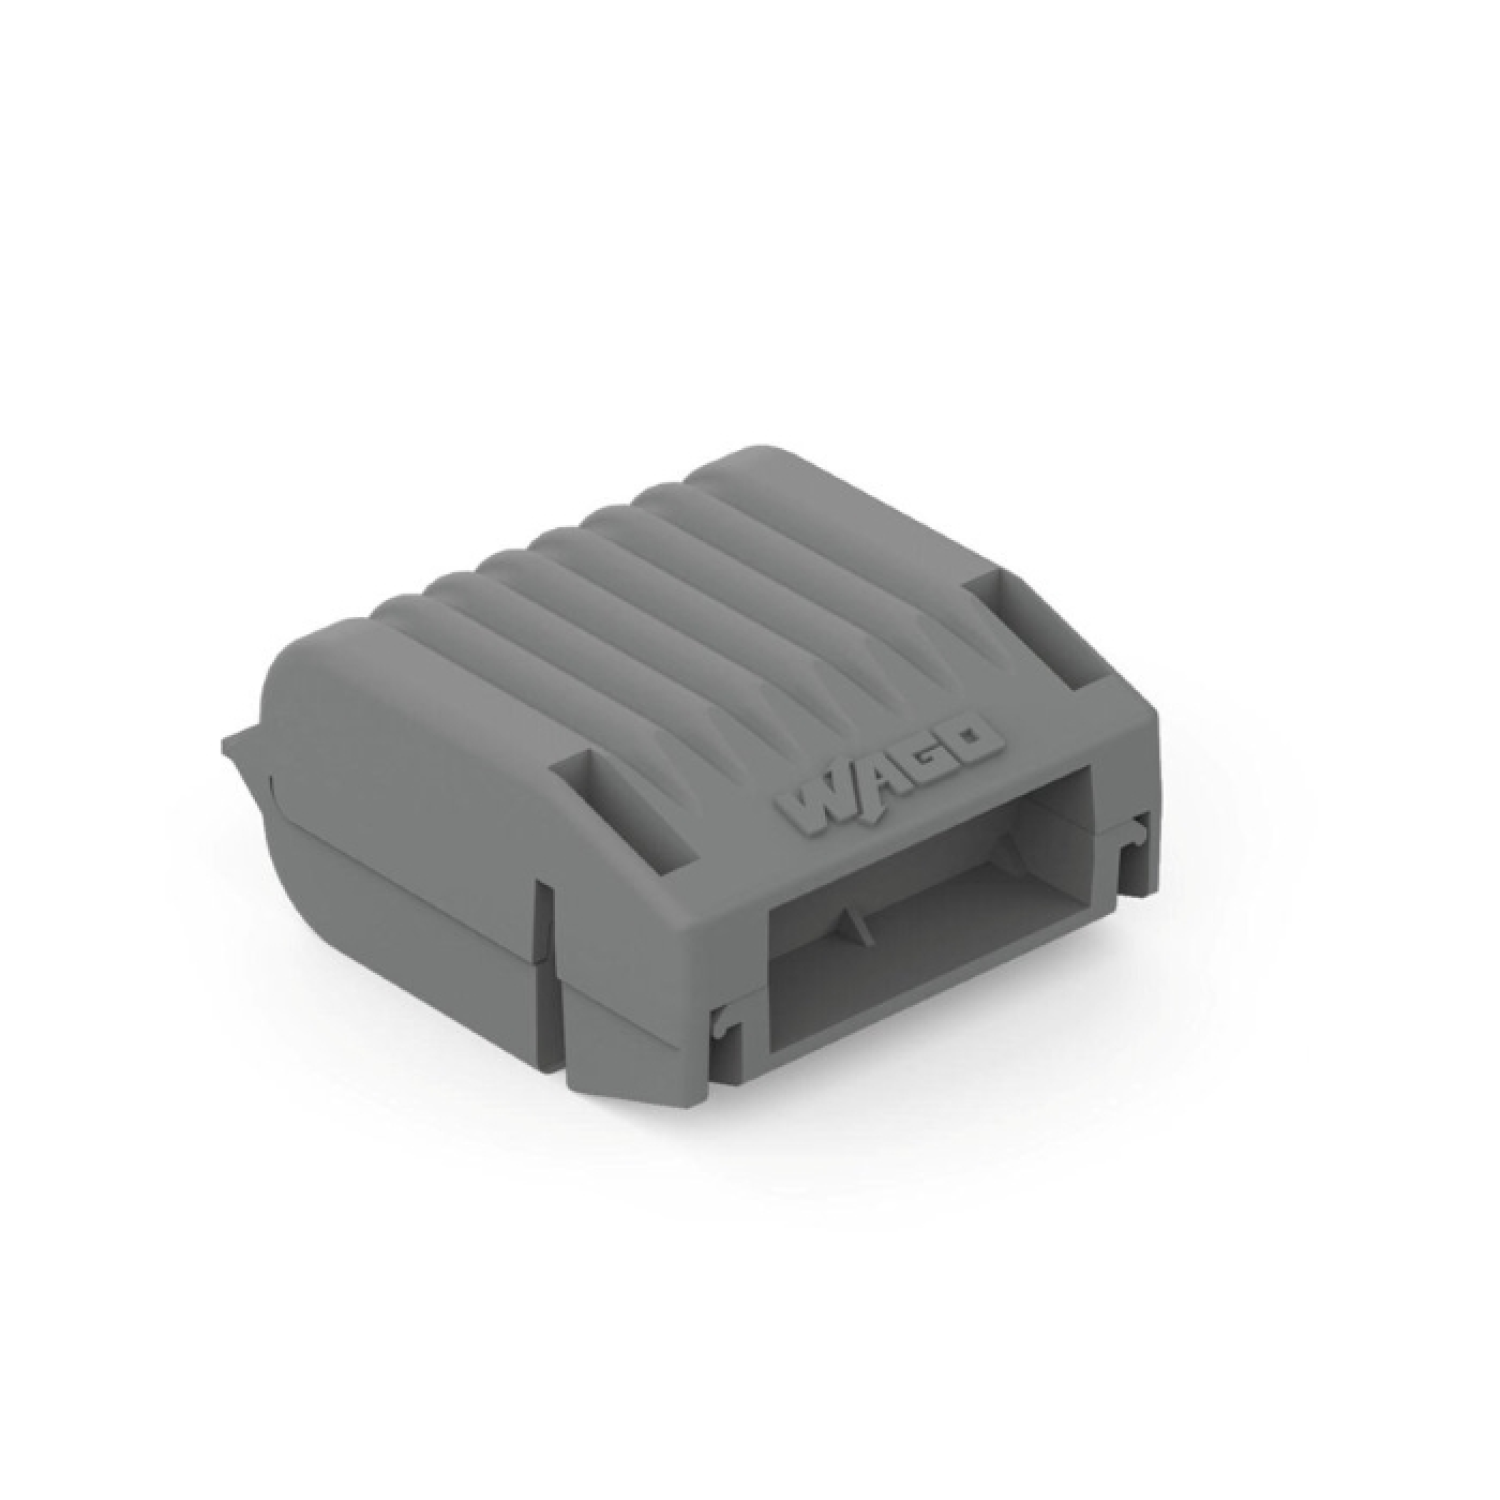 WAGO Gelbox pour pinces à souder - max. 4mm² - IPX8 - taille 1 - 4 pc.